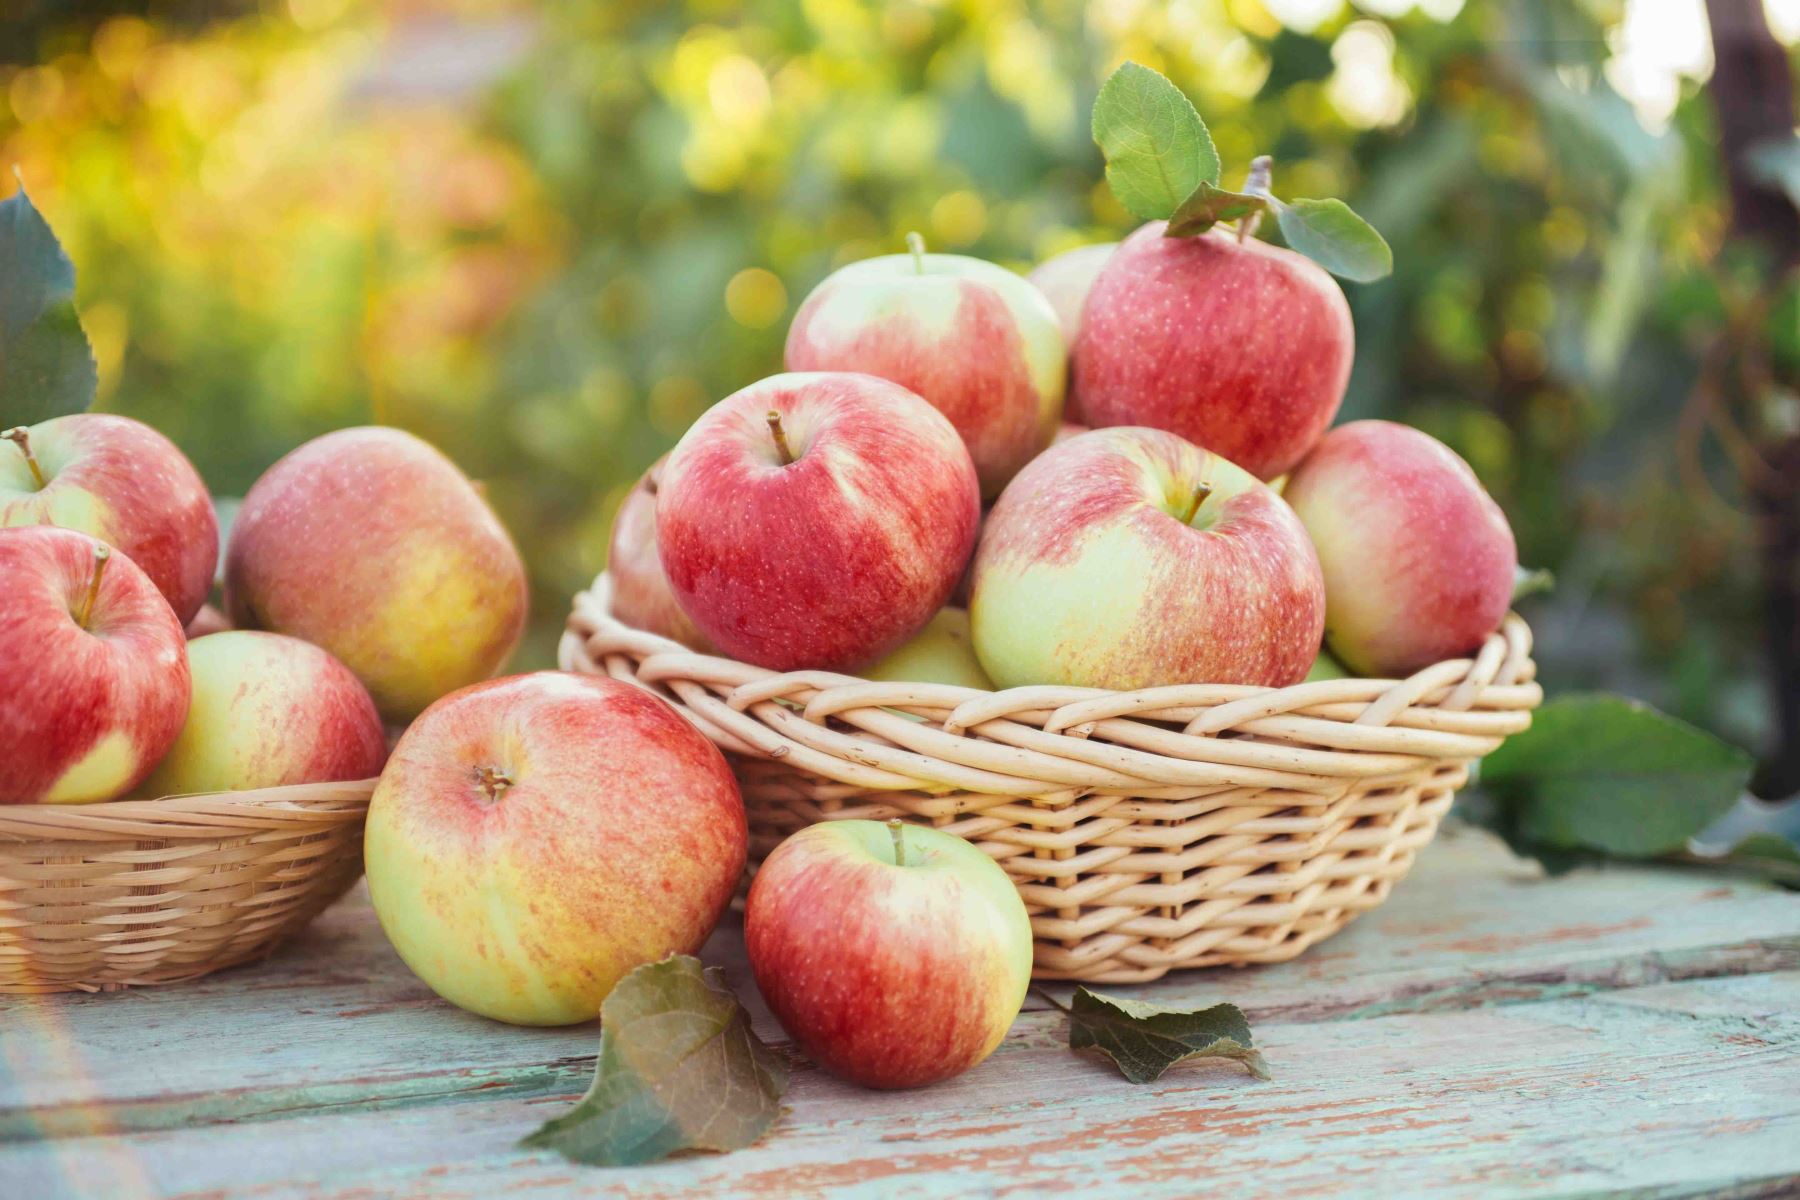 La manzana es una fruta dulce y deliciosa que cuenta con diversas propiedades nutritivas que son beneficiosas para nuestra salud. Foto: cortesía Inacal.